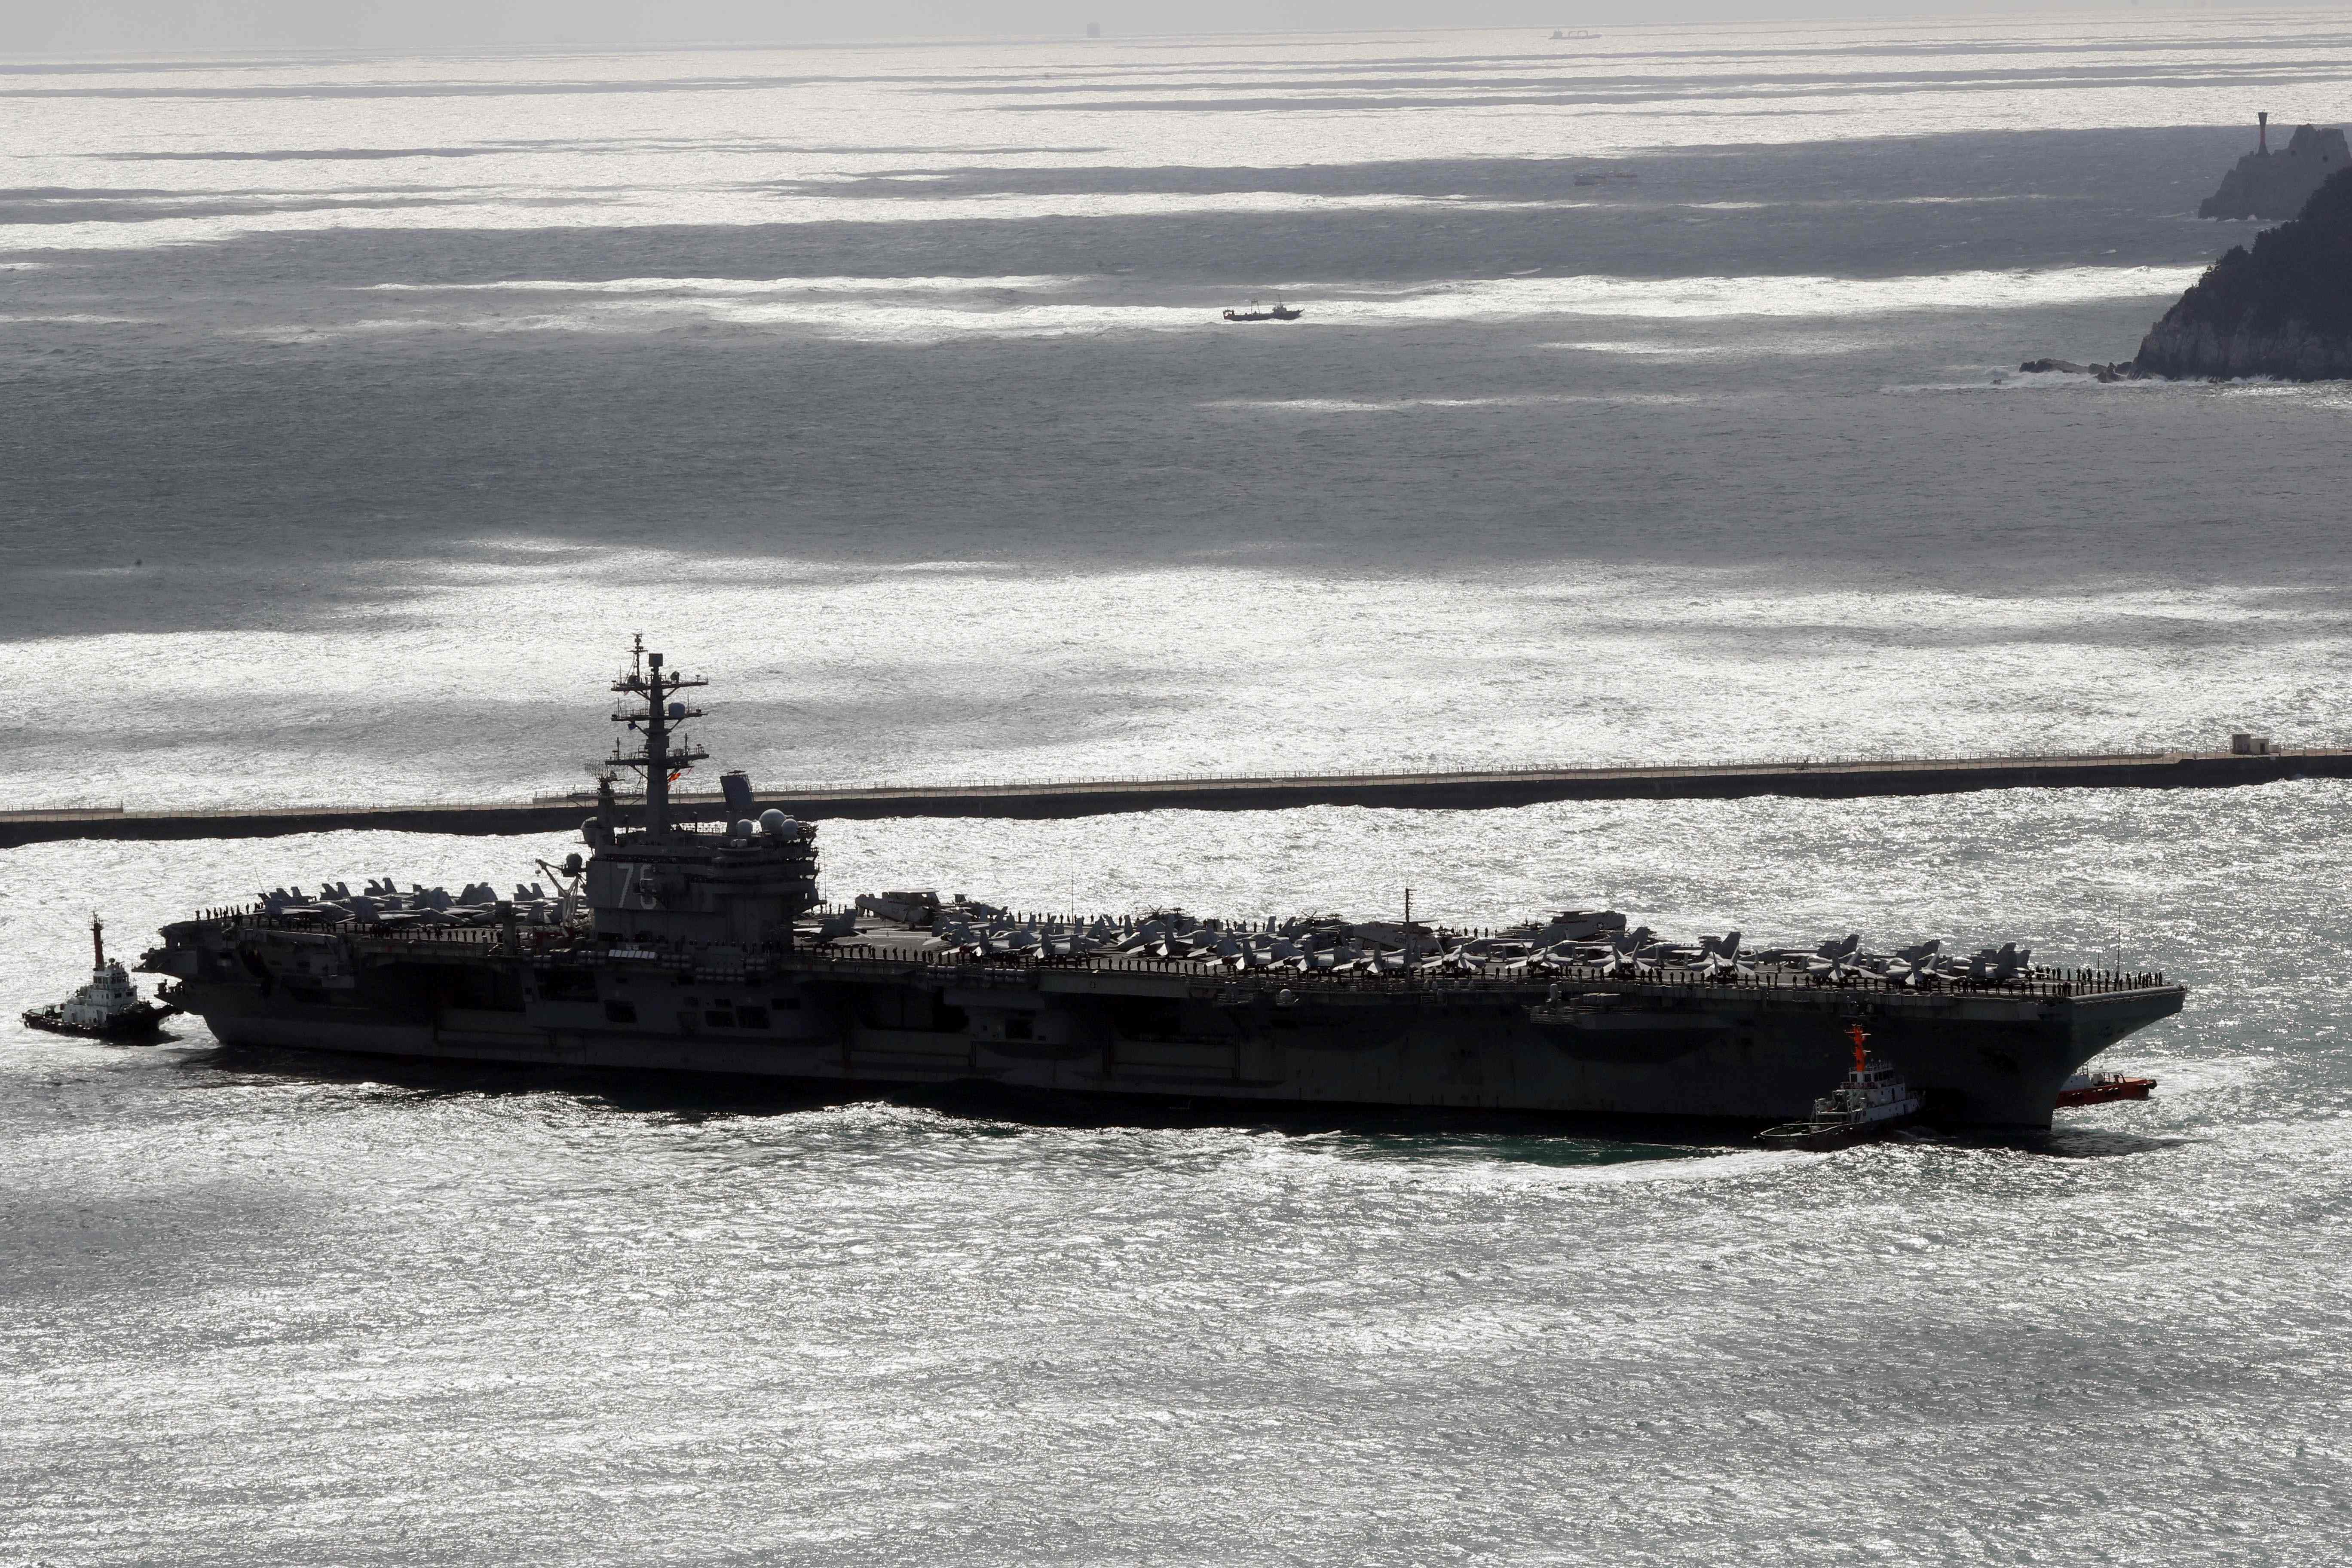 حاملة طائرات أمريكية تبحر فى مياه شبه الجزيرة الكورية